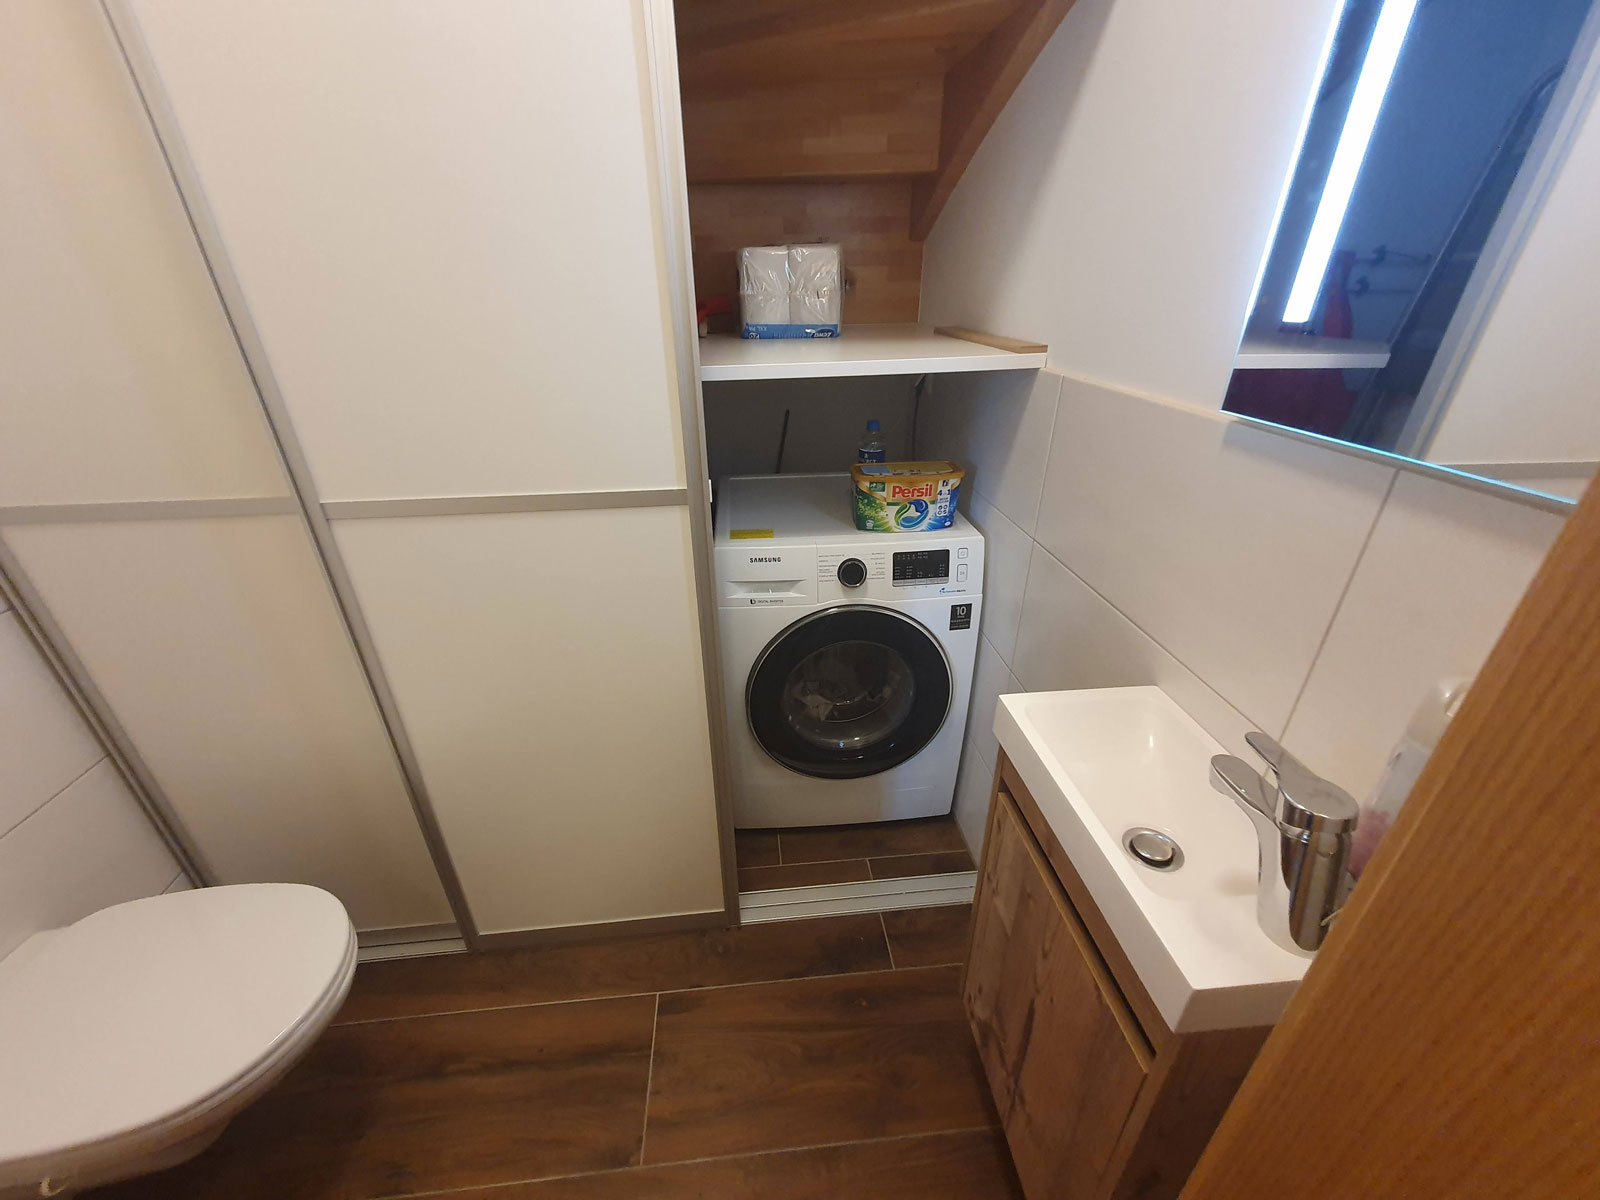 Toilette Erdgeschoss Waschmaschine Wäschetrockner Berghaus Edelhirsch